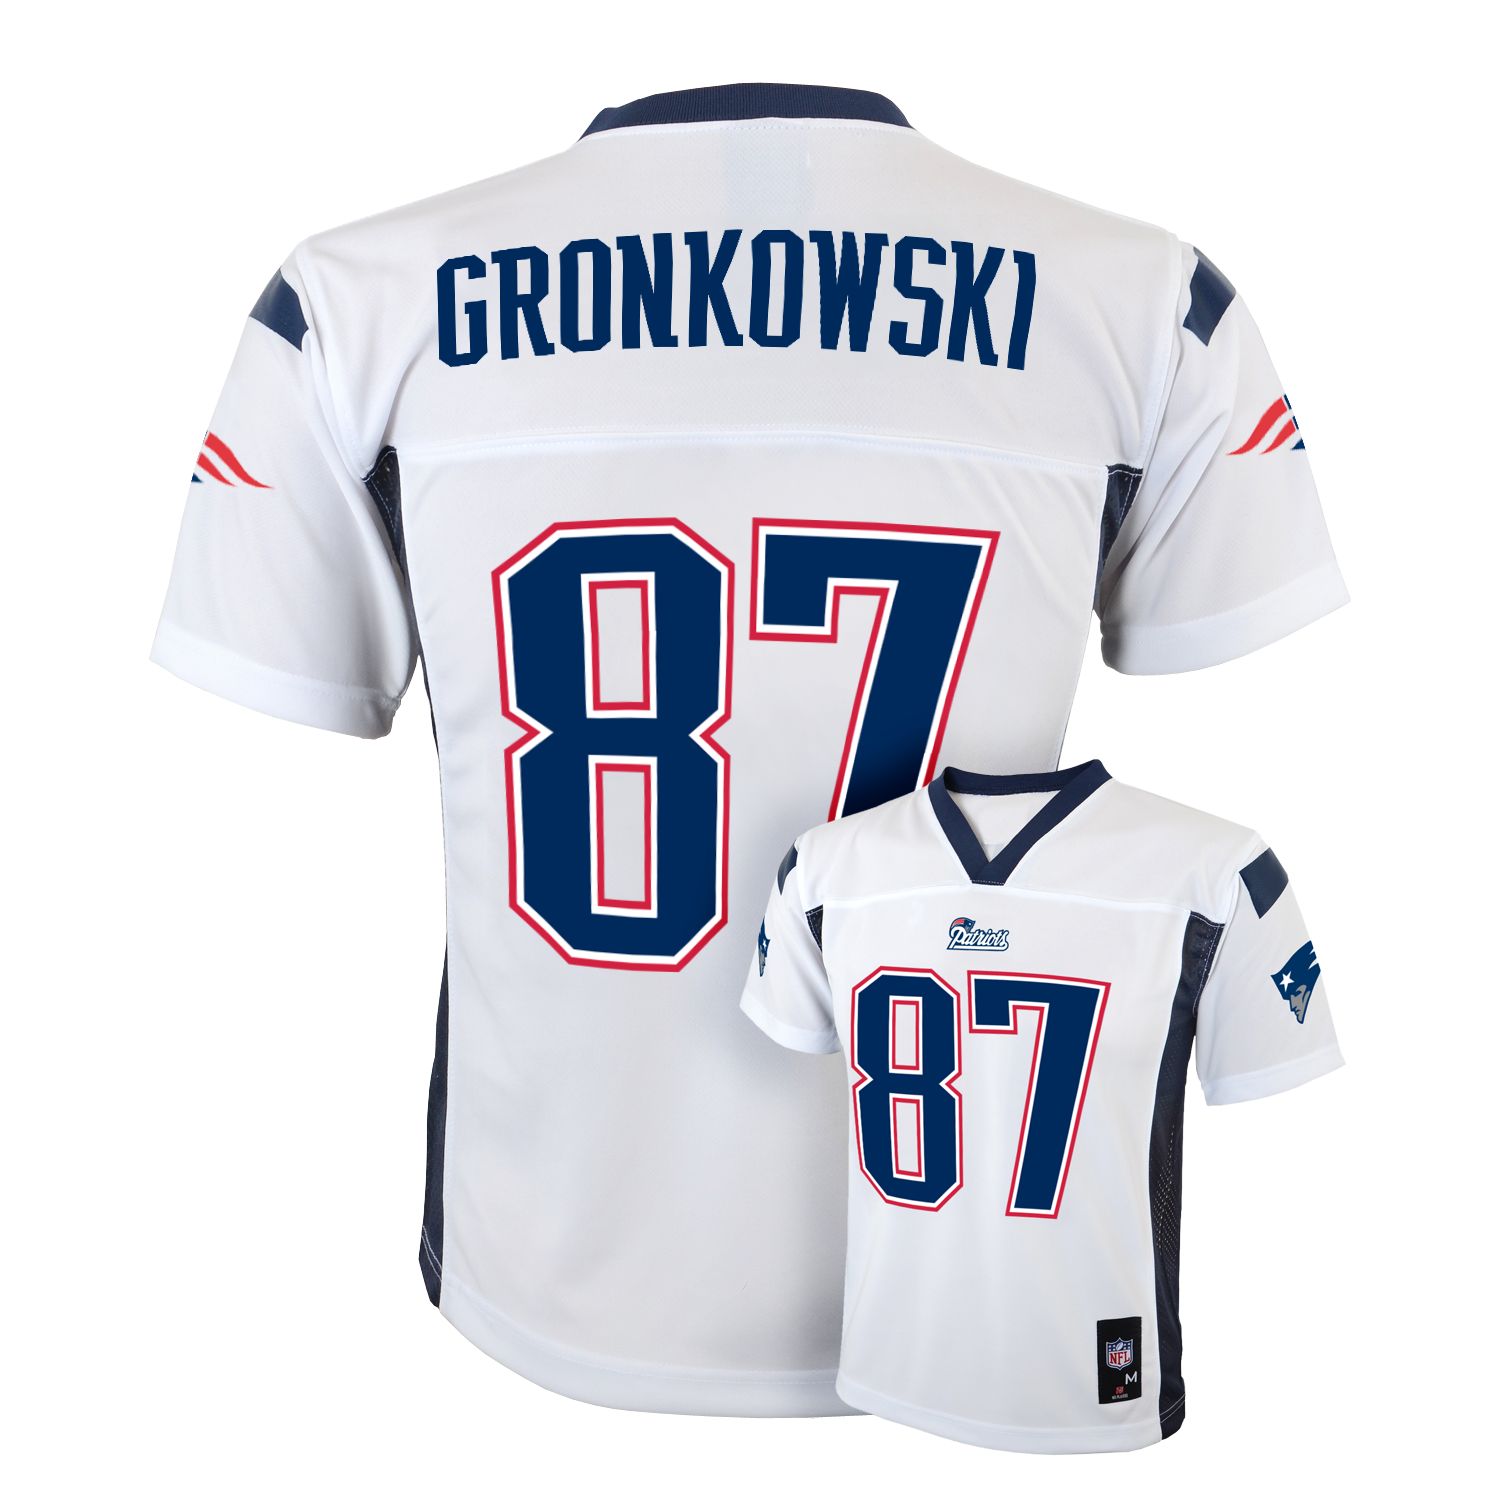 gronkowski jersey patriots